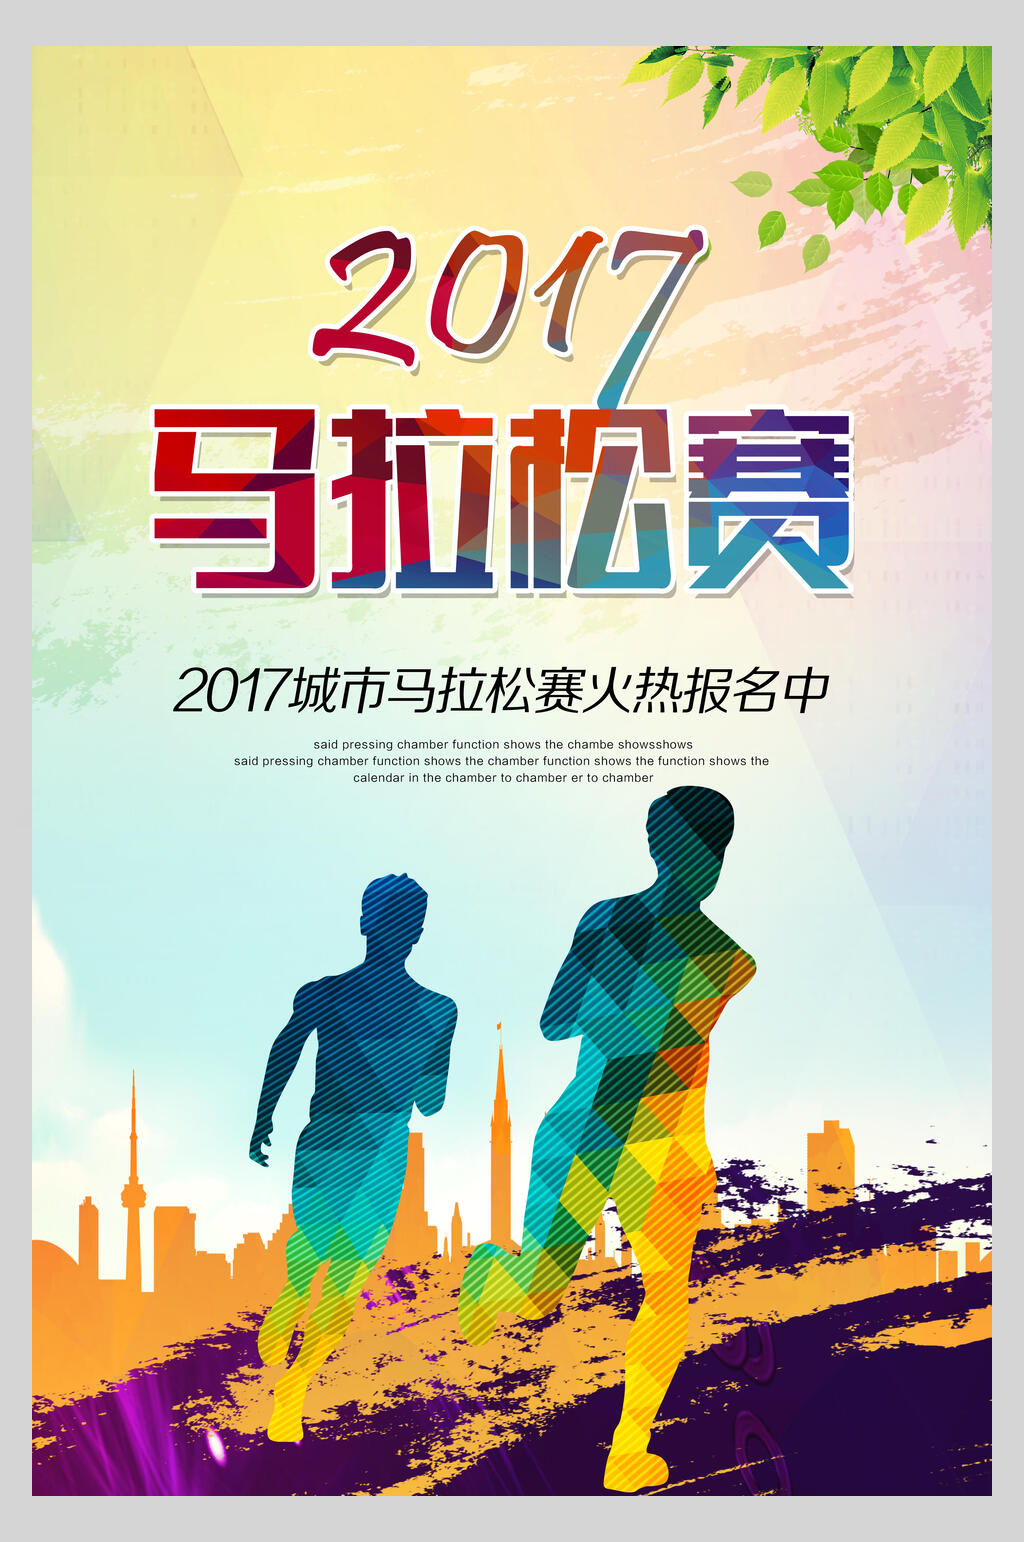 马拉松运动比赛宣传海报